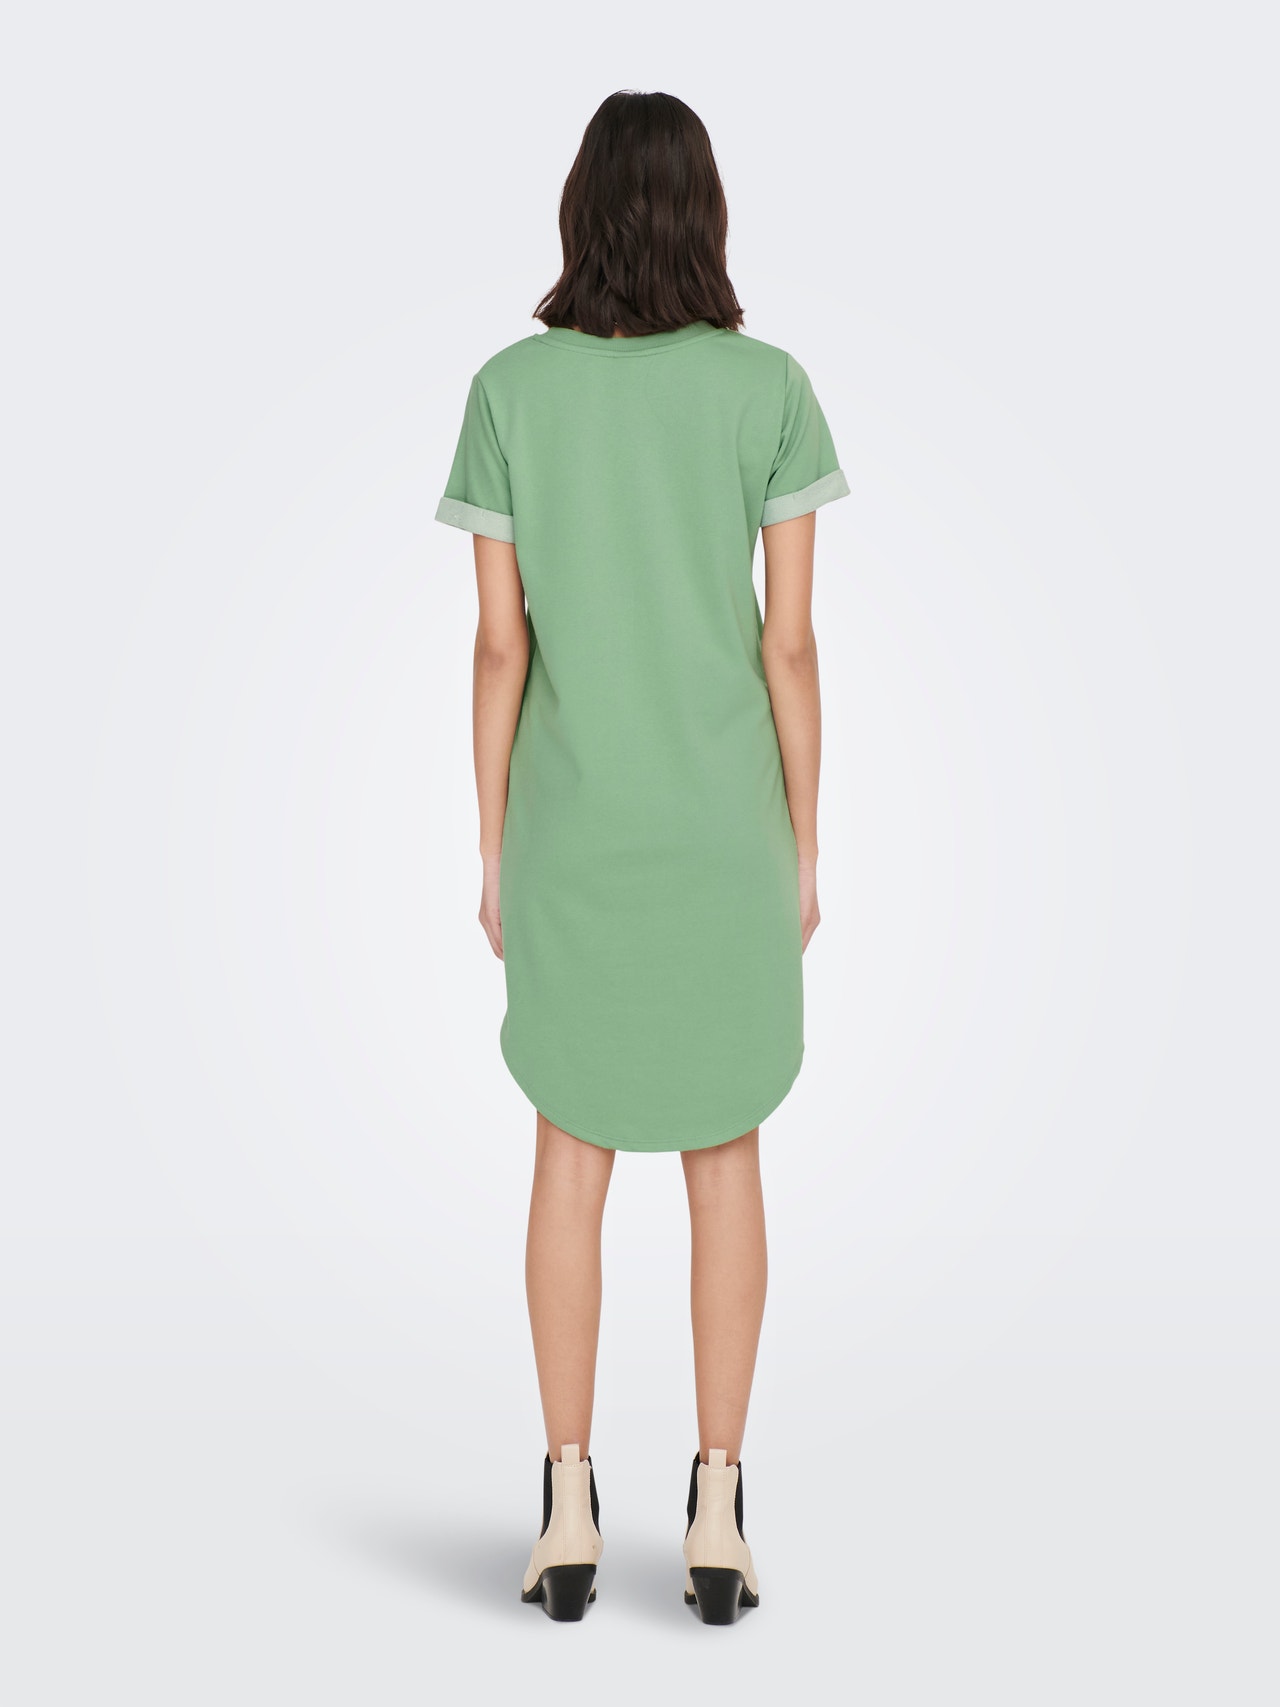 ONLY Short T-shirt Dress -Basil - 15174793